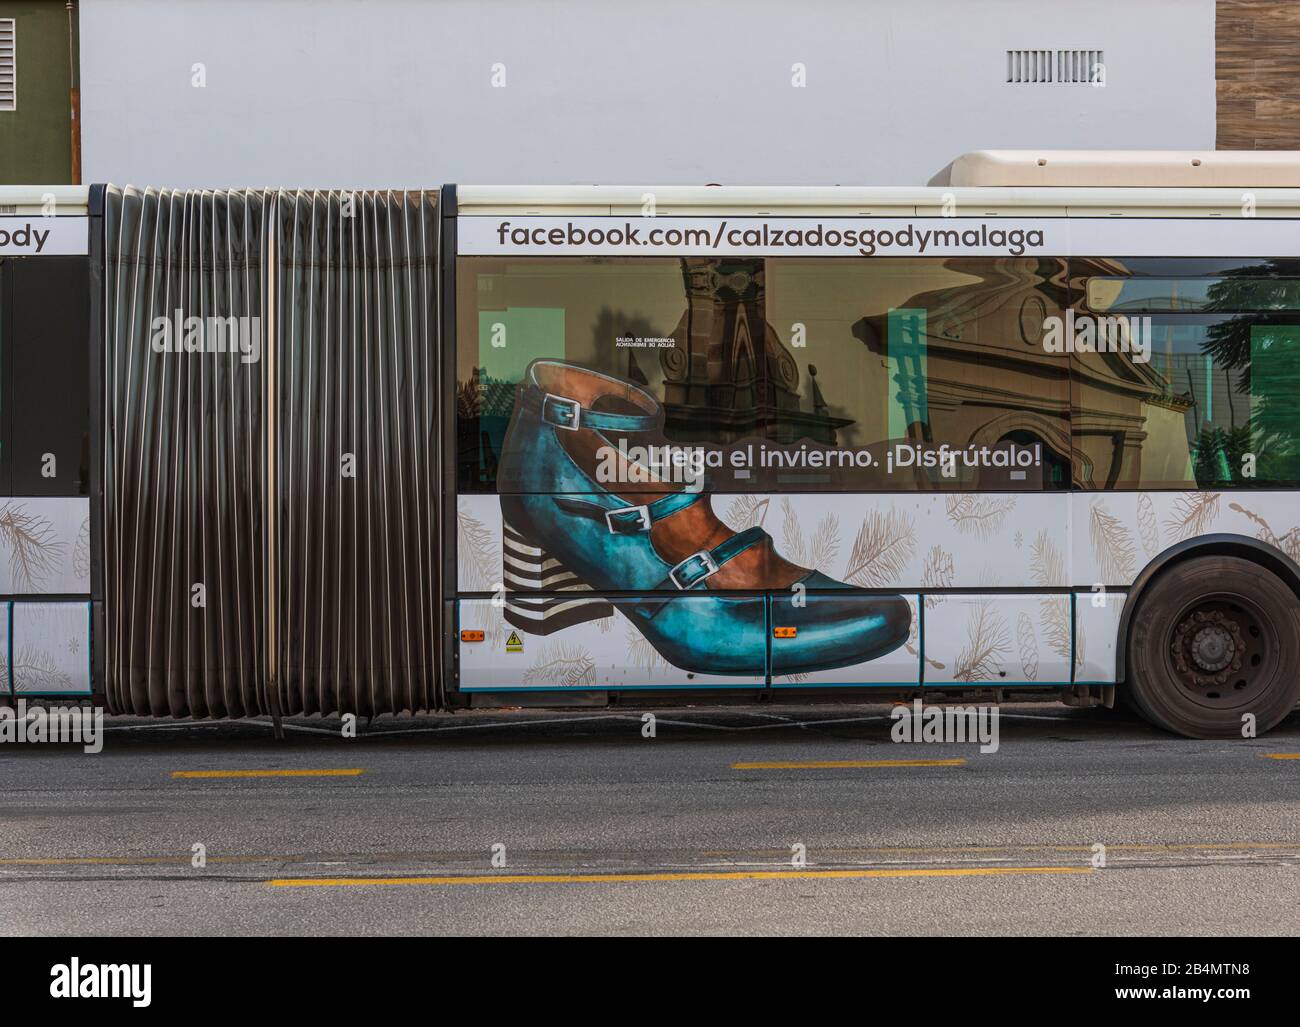 Un giorno a Malaga; impressioni da questa città in Andalusia, Spagna. Autobus pubblico con pubblicità per un marchio di scarpe Foto Stock